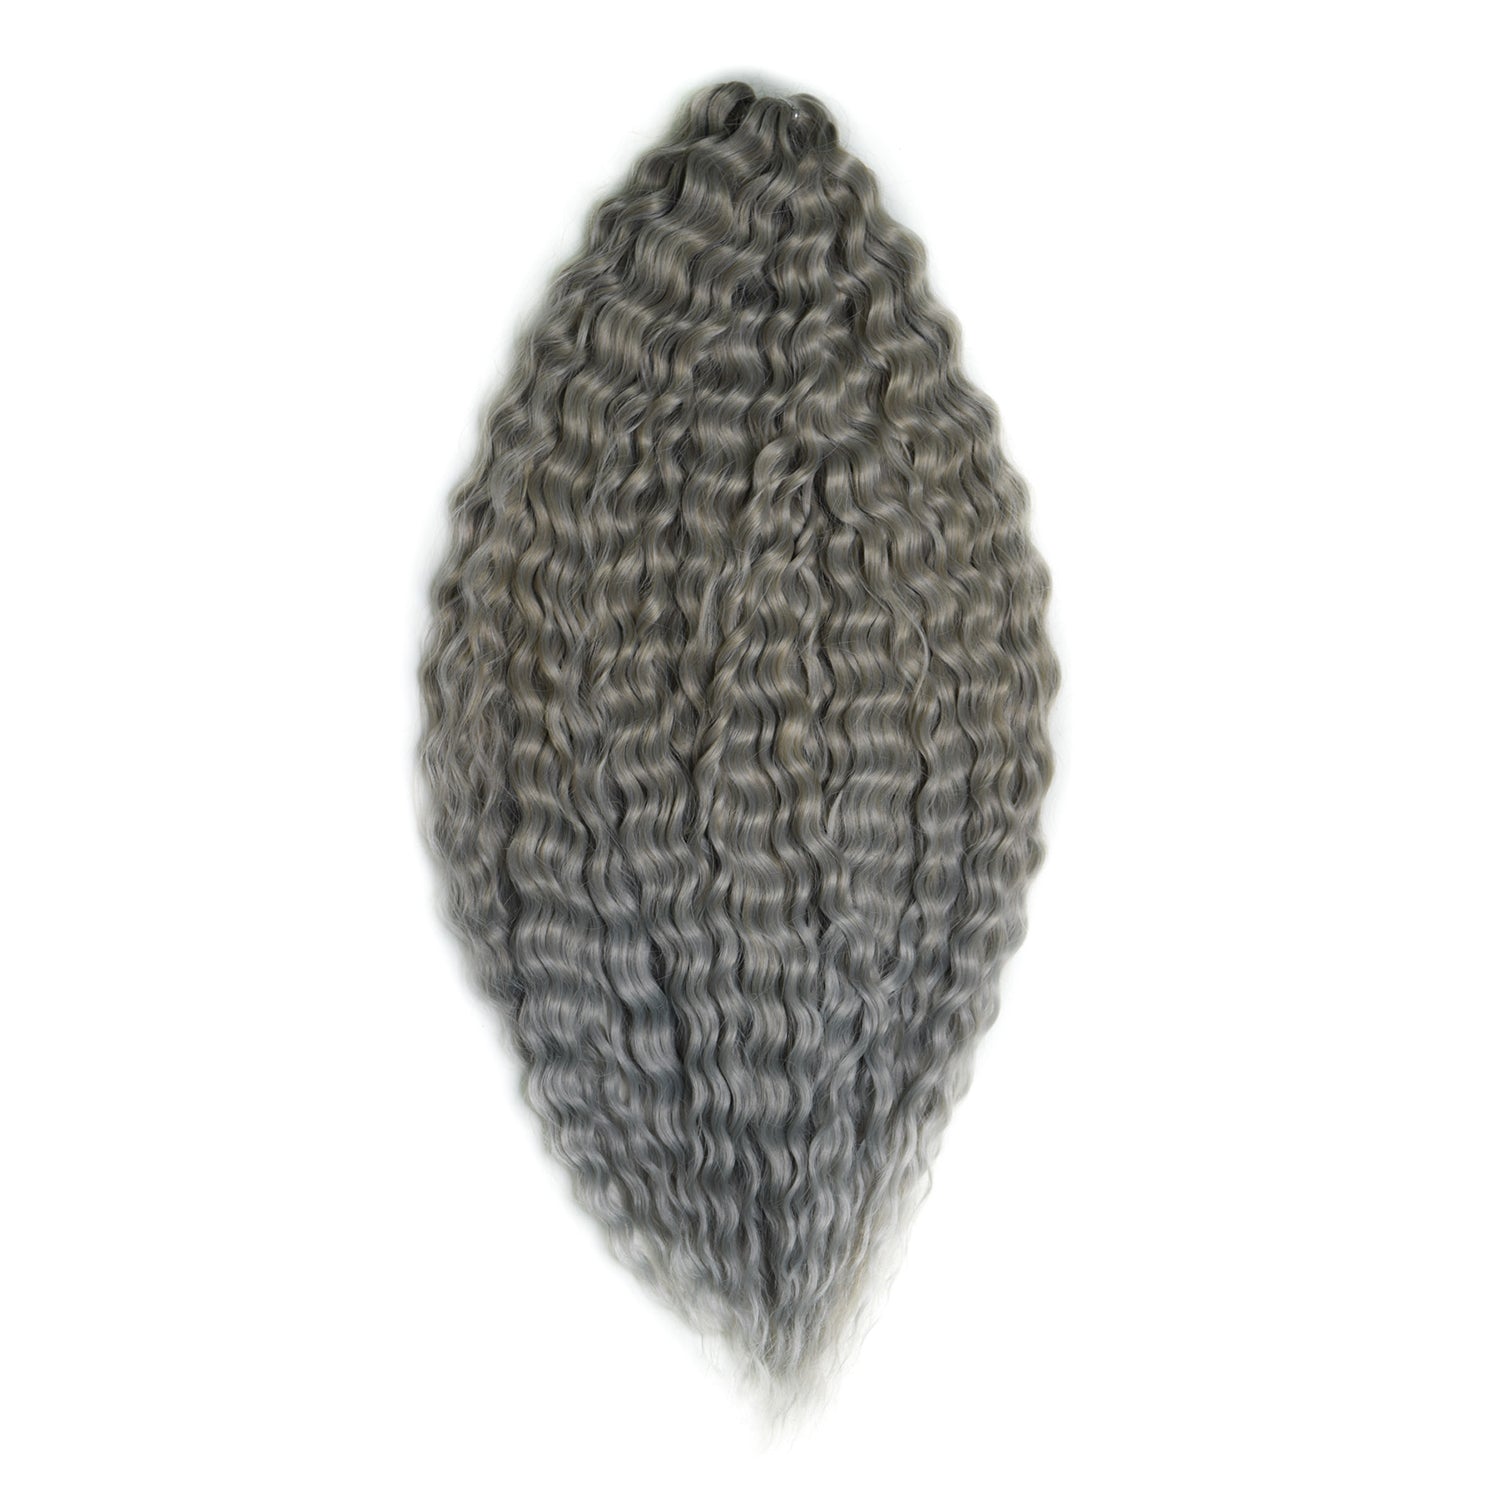 Афрокудри для плетения волос Ariel цвет T16 60A Cерый длина 55см вес 300г